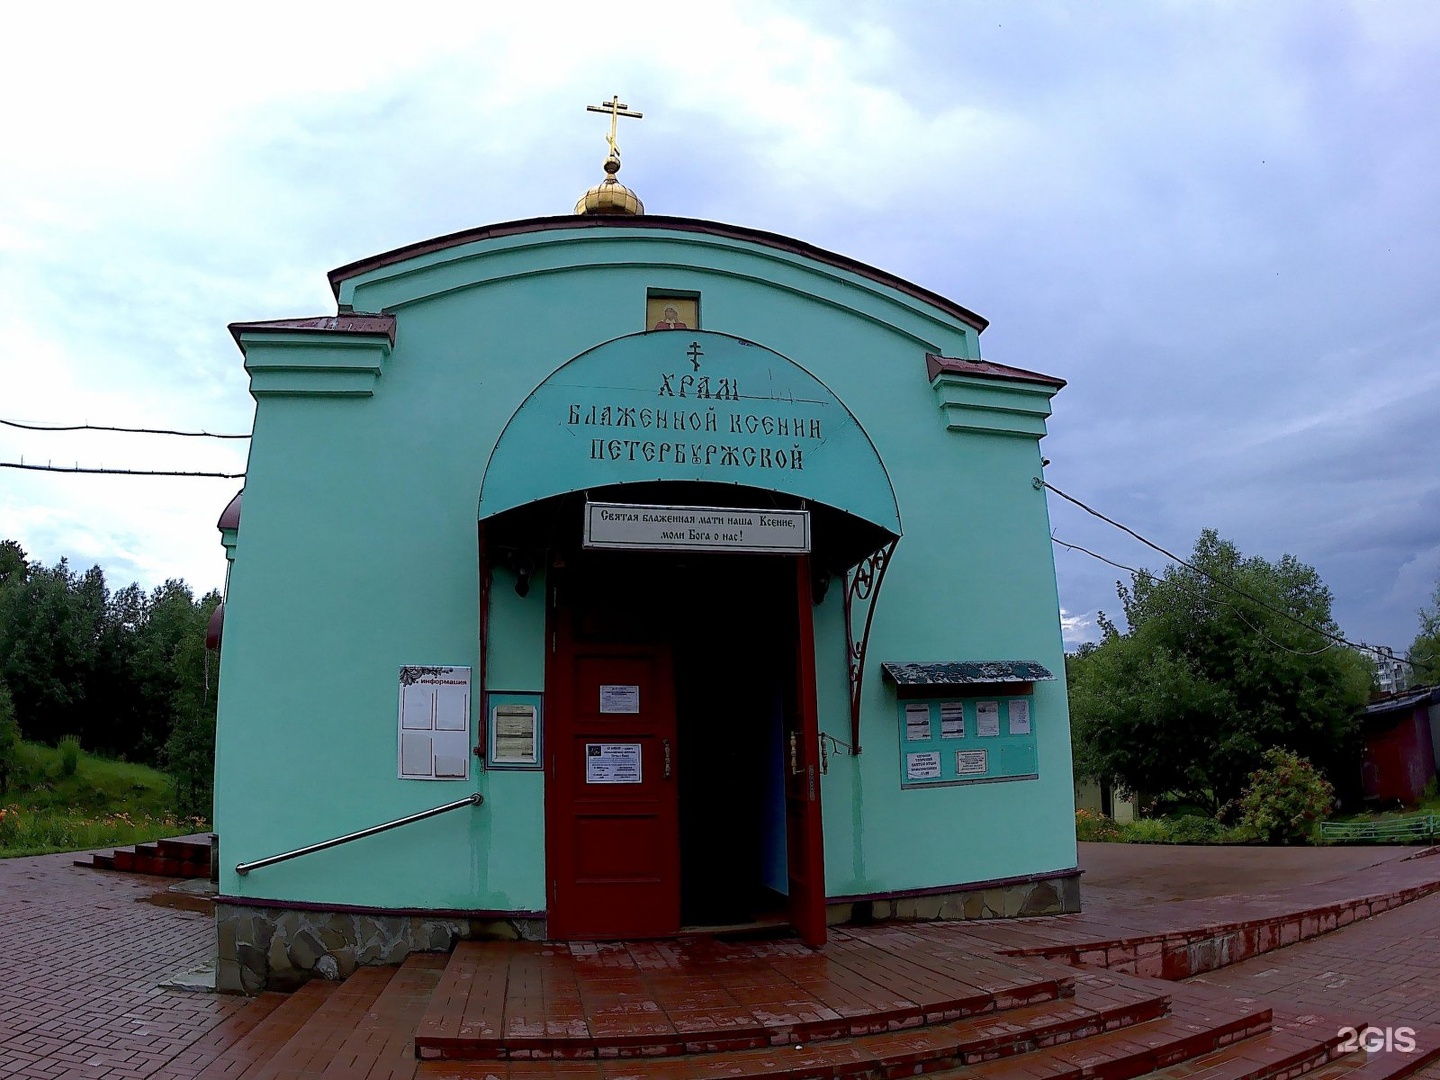 храм ксении петербургской тверь